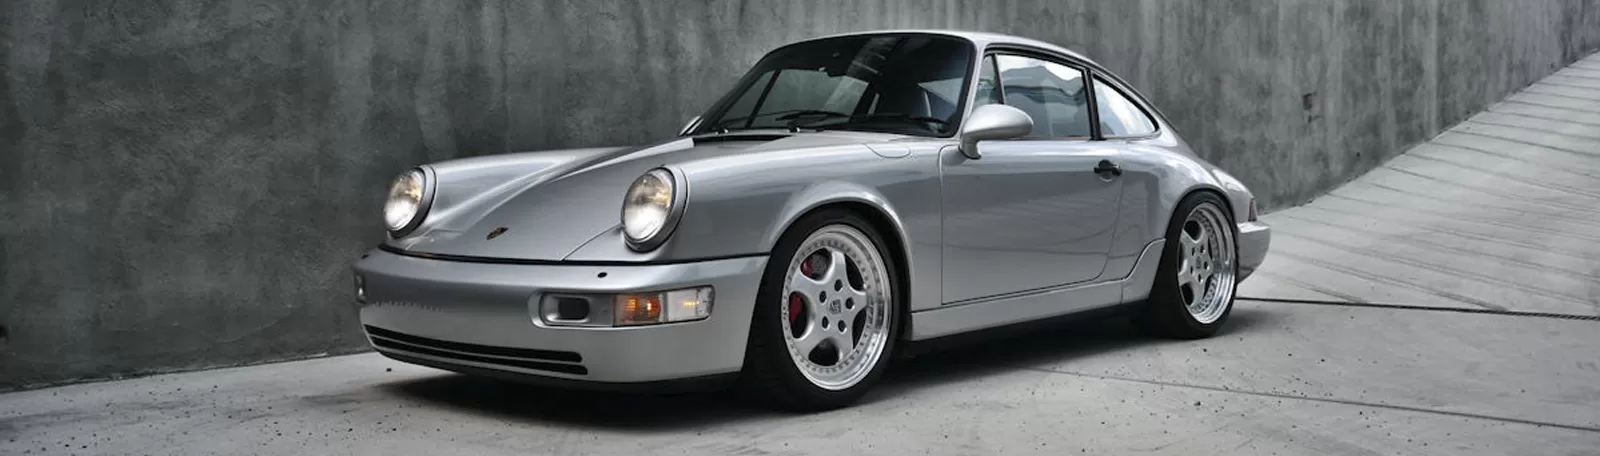 Porsche 964 - новое поколение 911-х 1989 модельного года